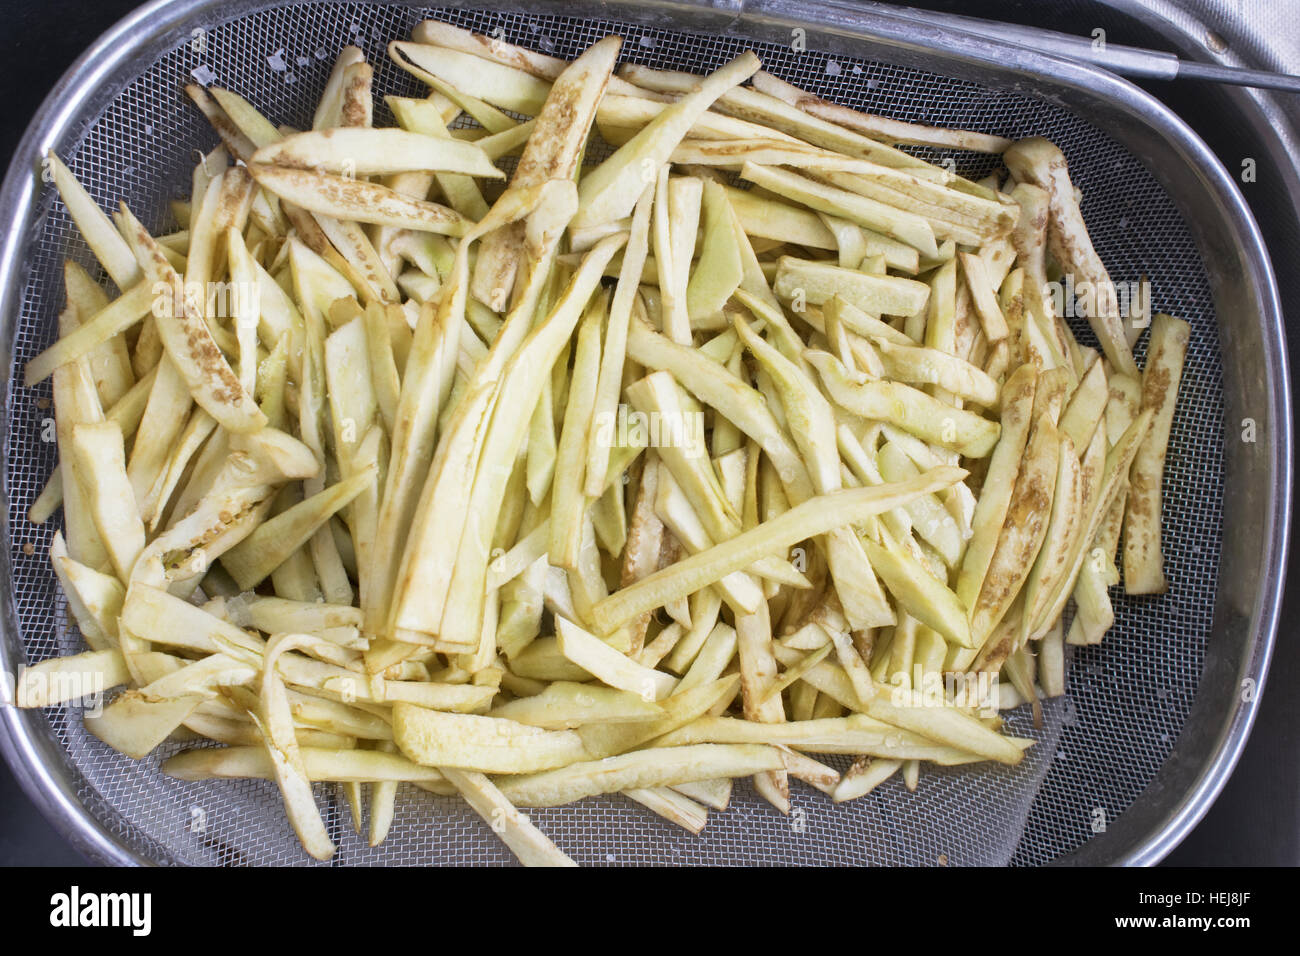 https://c8.alamy.com/comp/HEJ8JF/raw-handmade-potatoes-cut-in-sticks-ready-to-be-fried-HEJ8JF.jpg